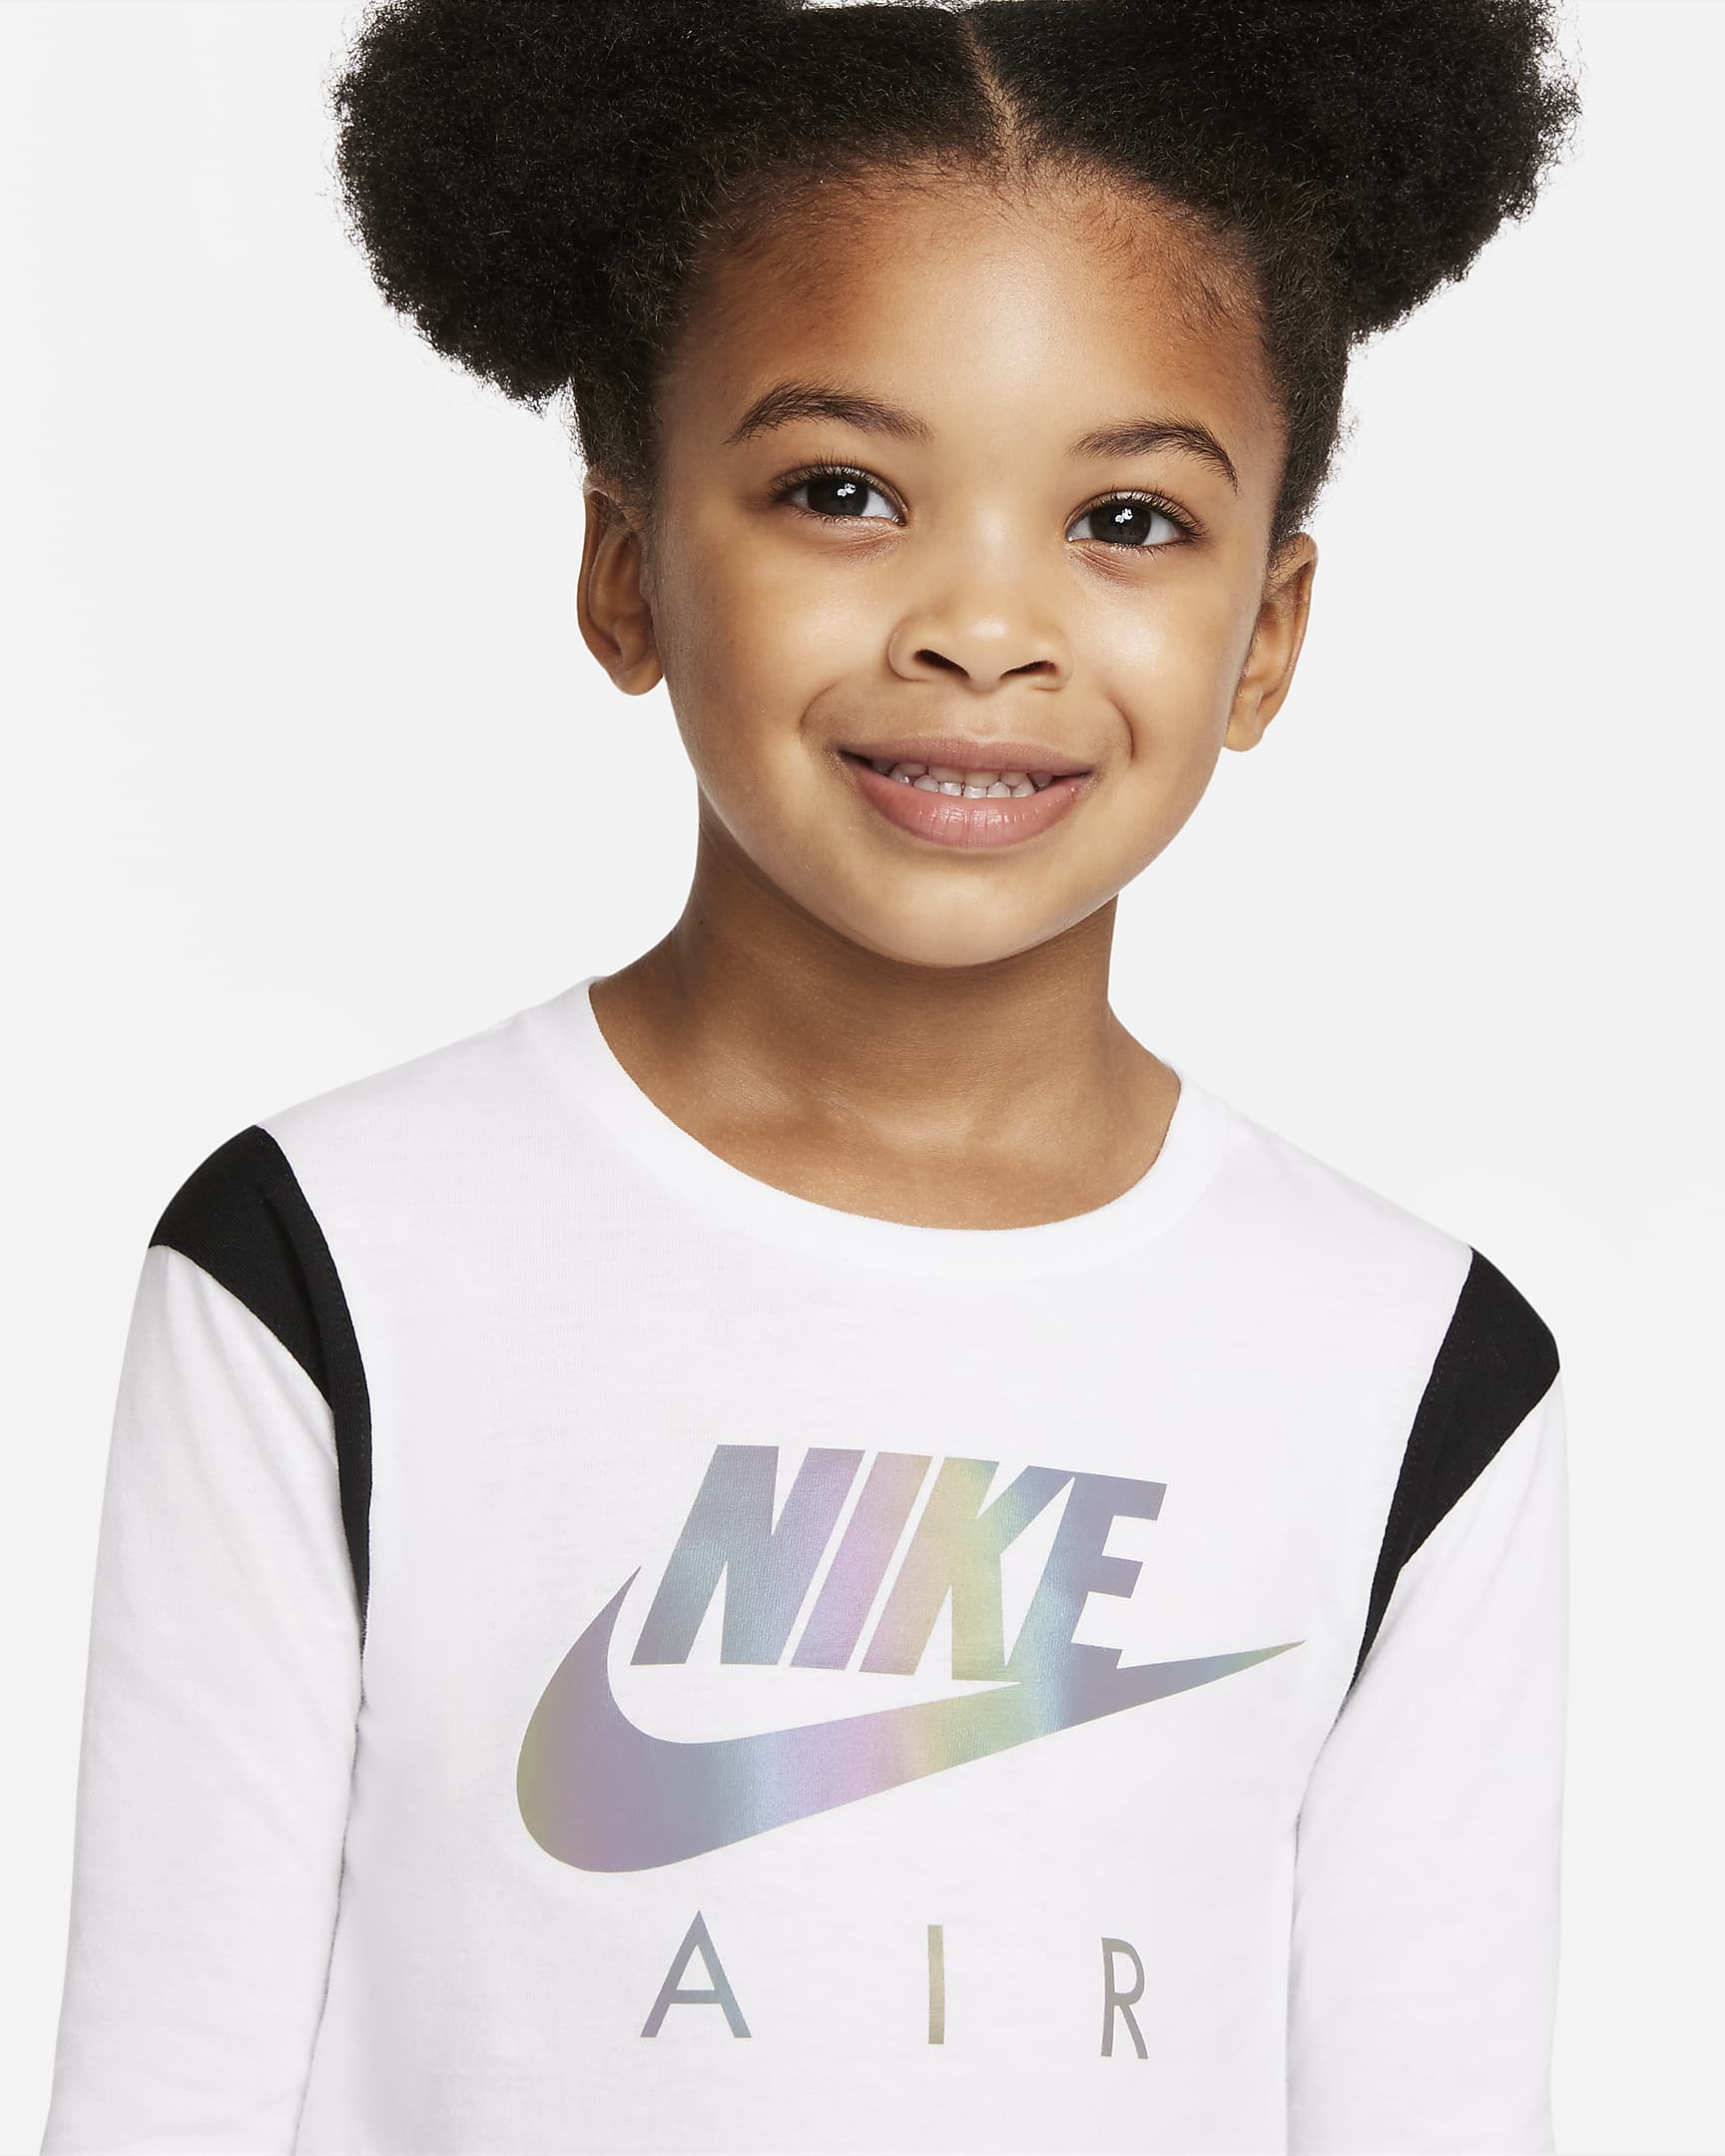 Nike Air Toddler T-Shirt and Leggings Set. Nike.com